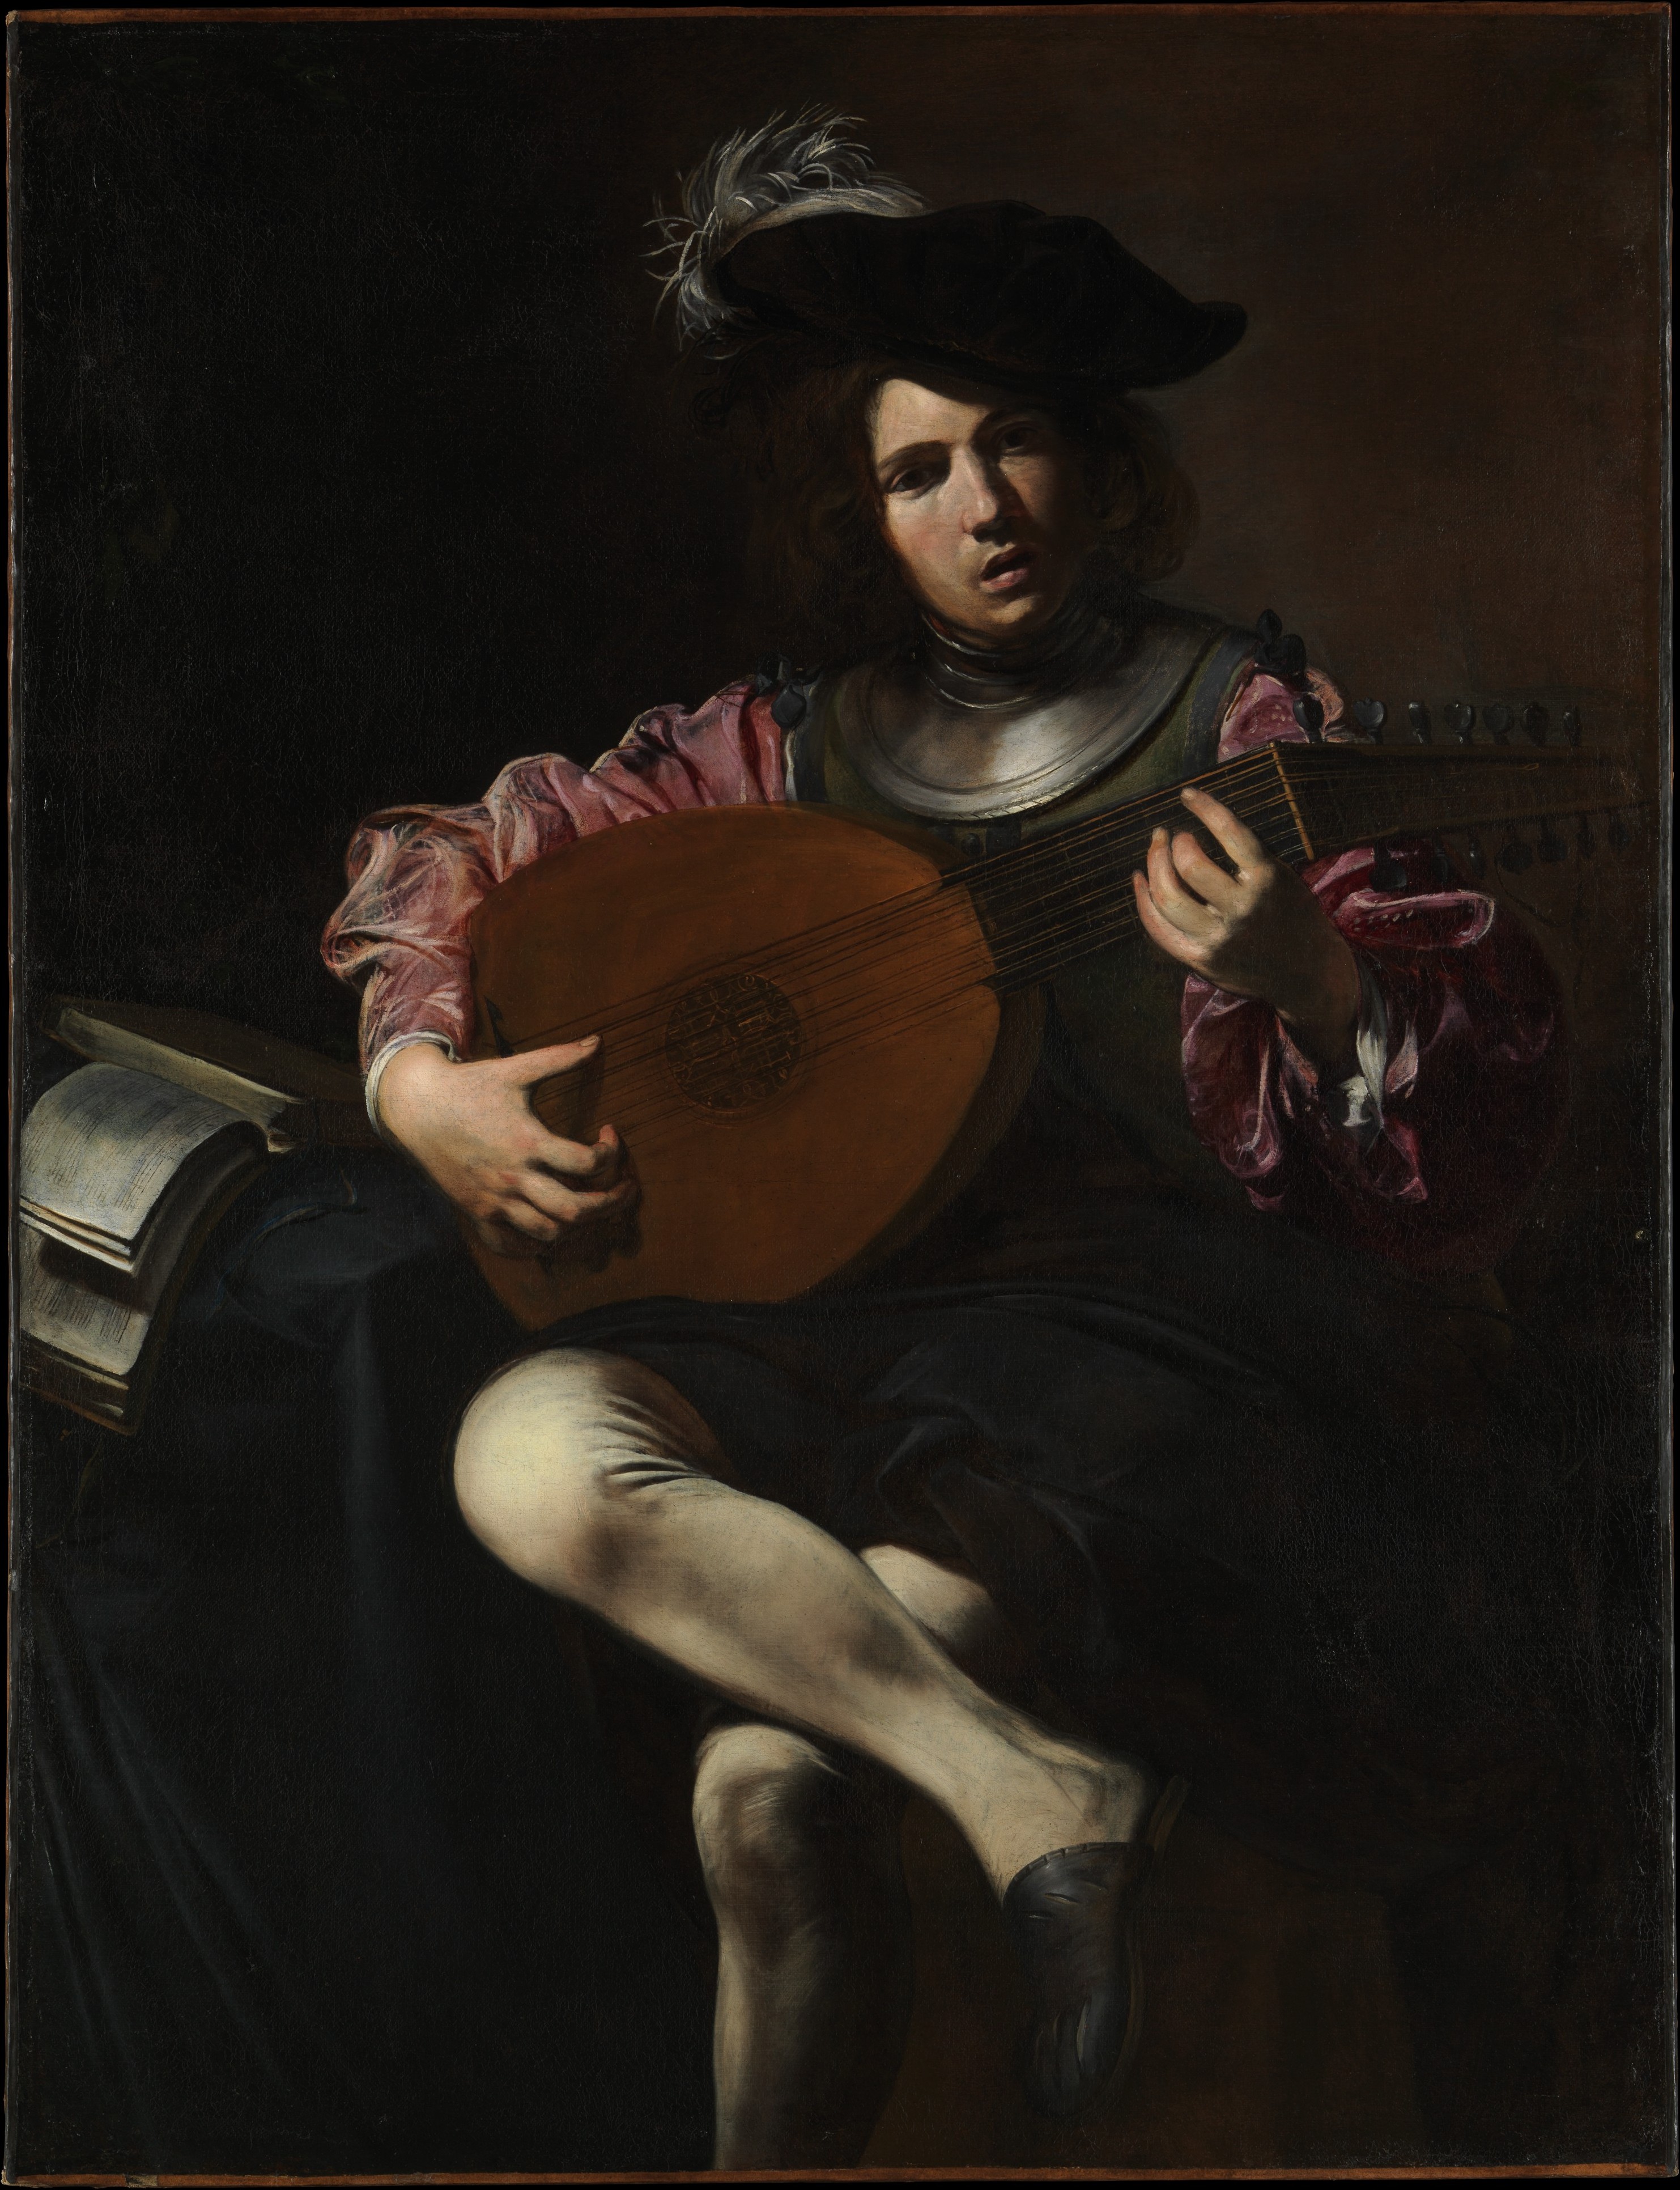 Le Joueur de luth by Valentin de Boulogne - env. 1625–26 - 128.3 x 99.1 cm Metropolitan Museum of Art